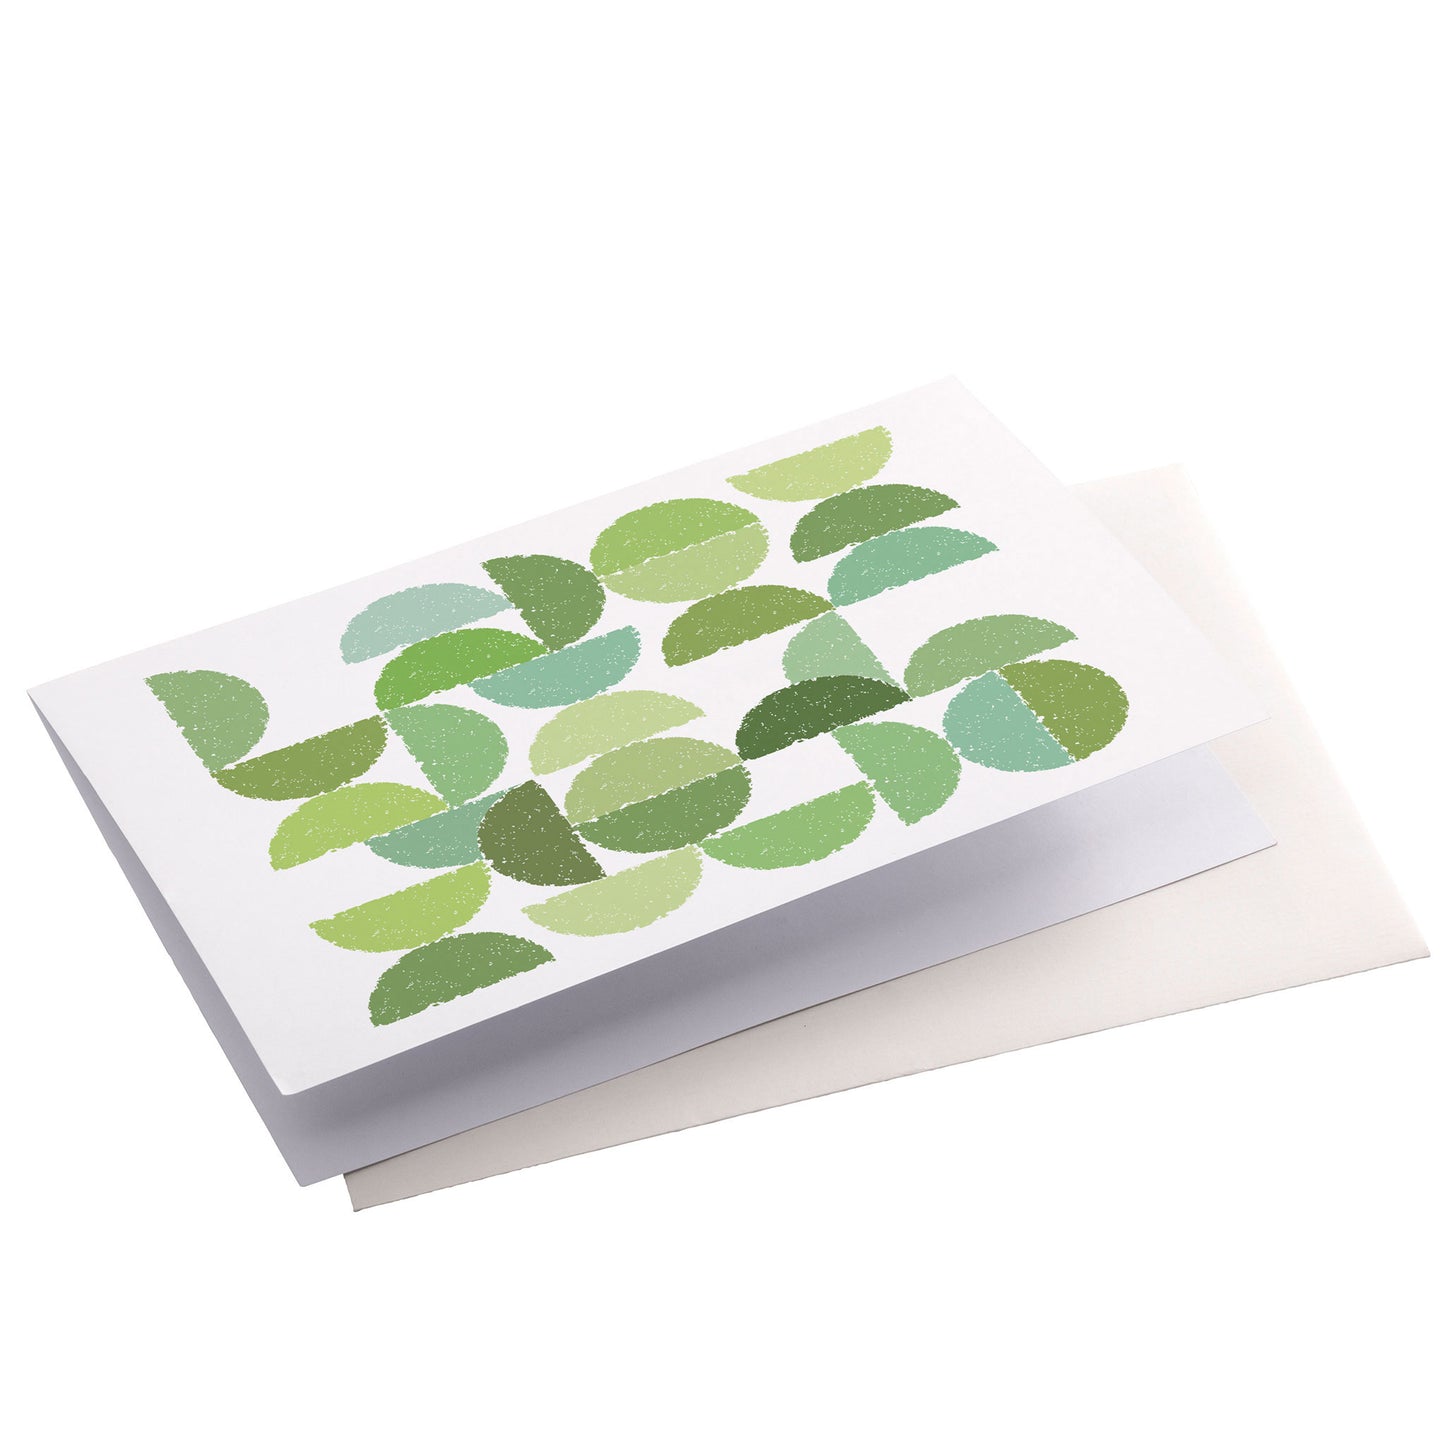 Productafbeelding, wenskaart "ronde kleuren naar bladgroen", zijaanzicht liggend met een envelop